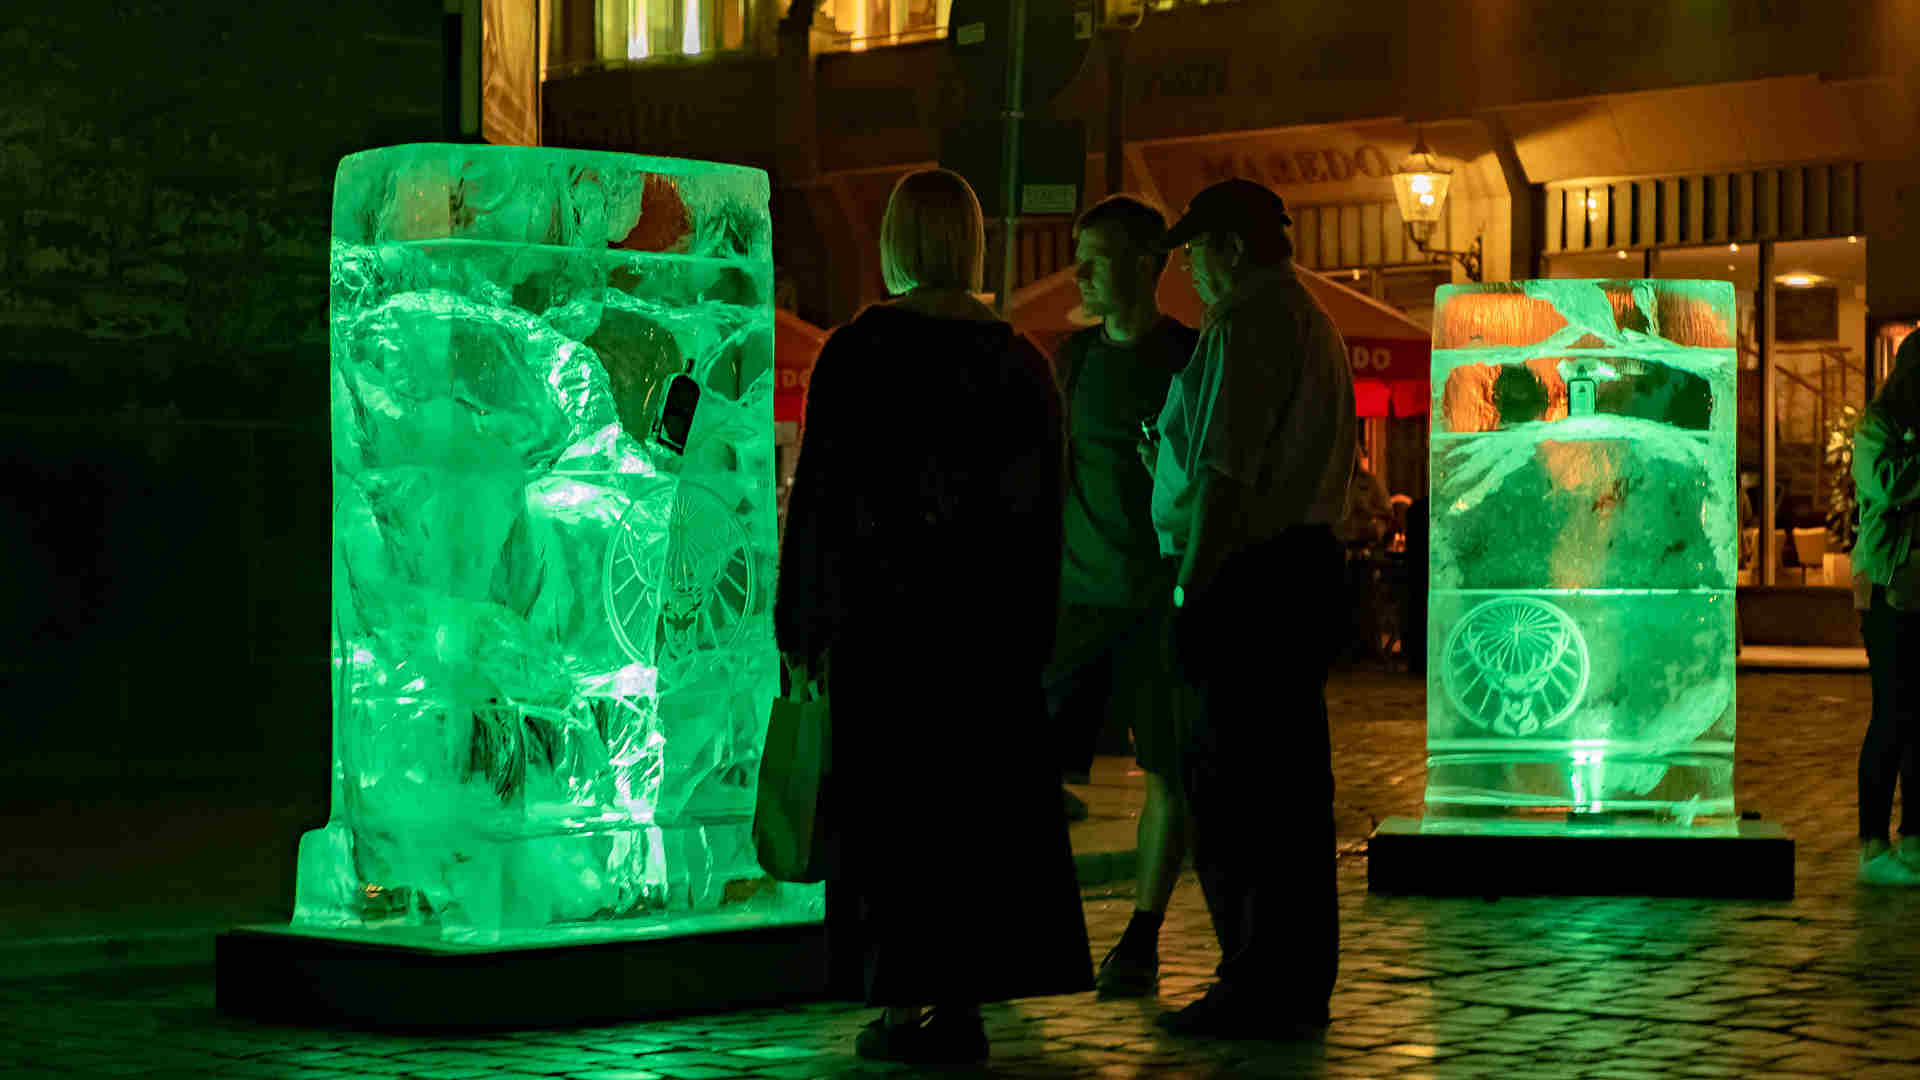 Zielgruppe schaut auf neongrün illuminierte Eisblock-Plakate von Jägermeister